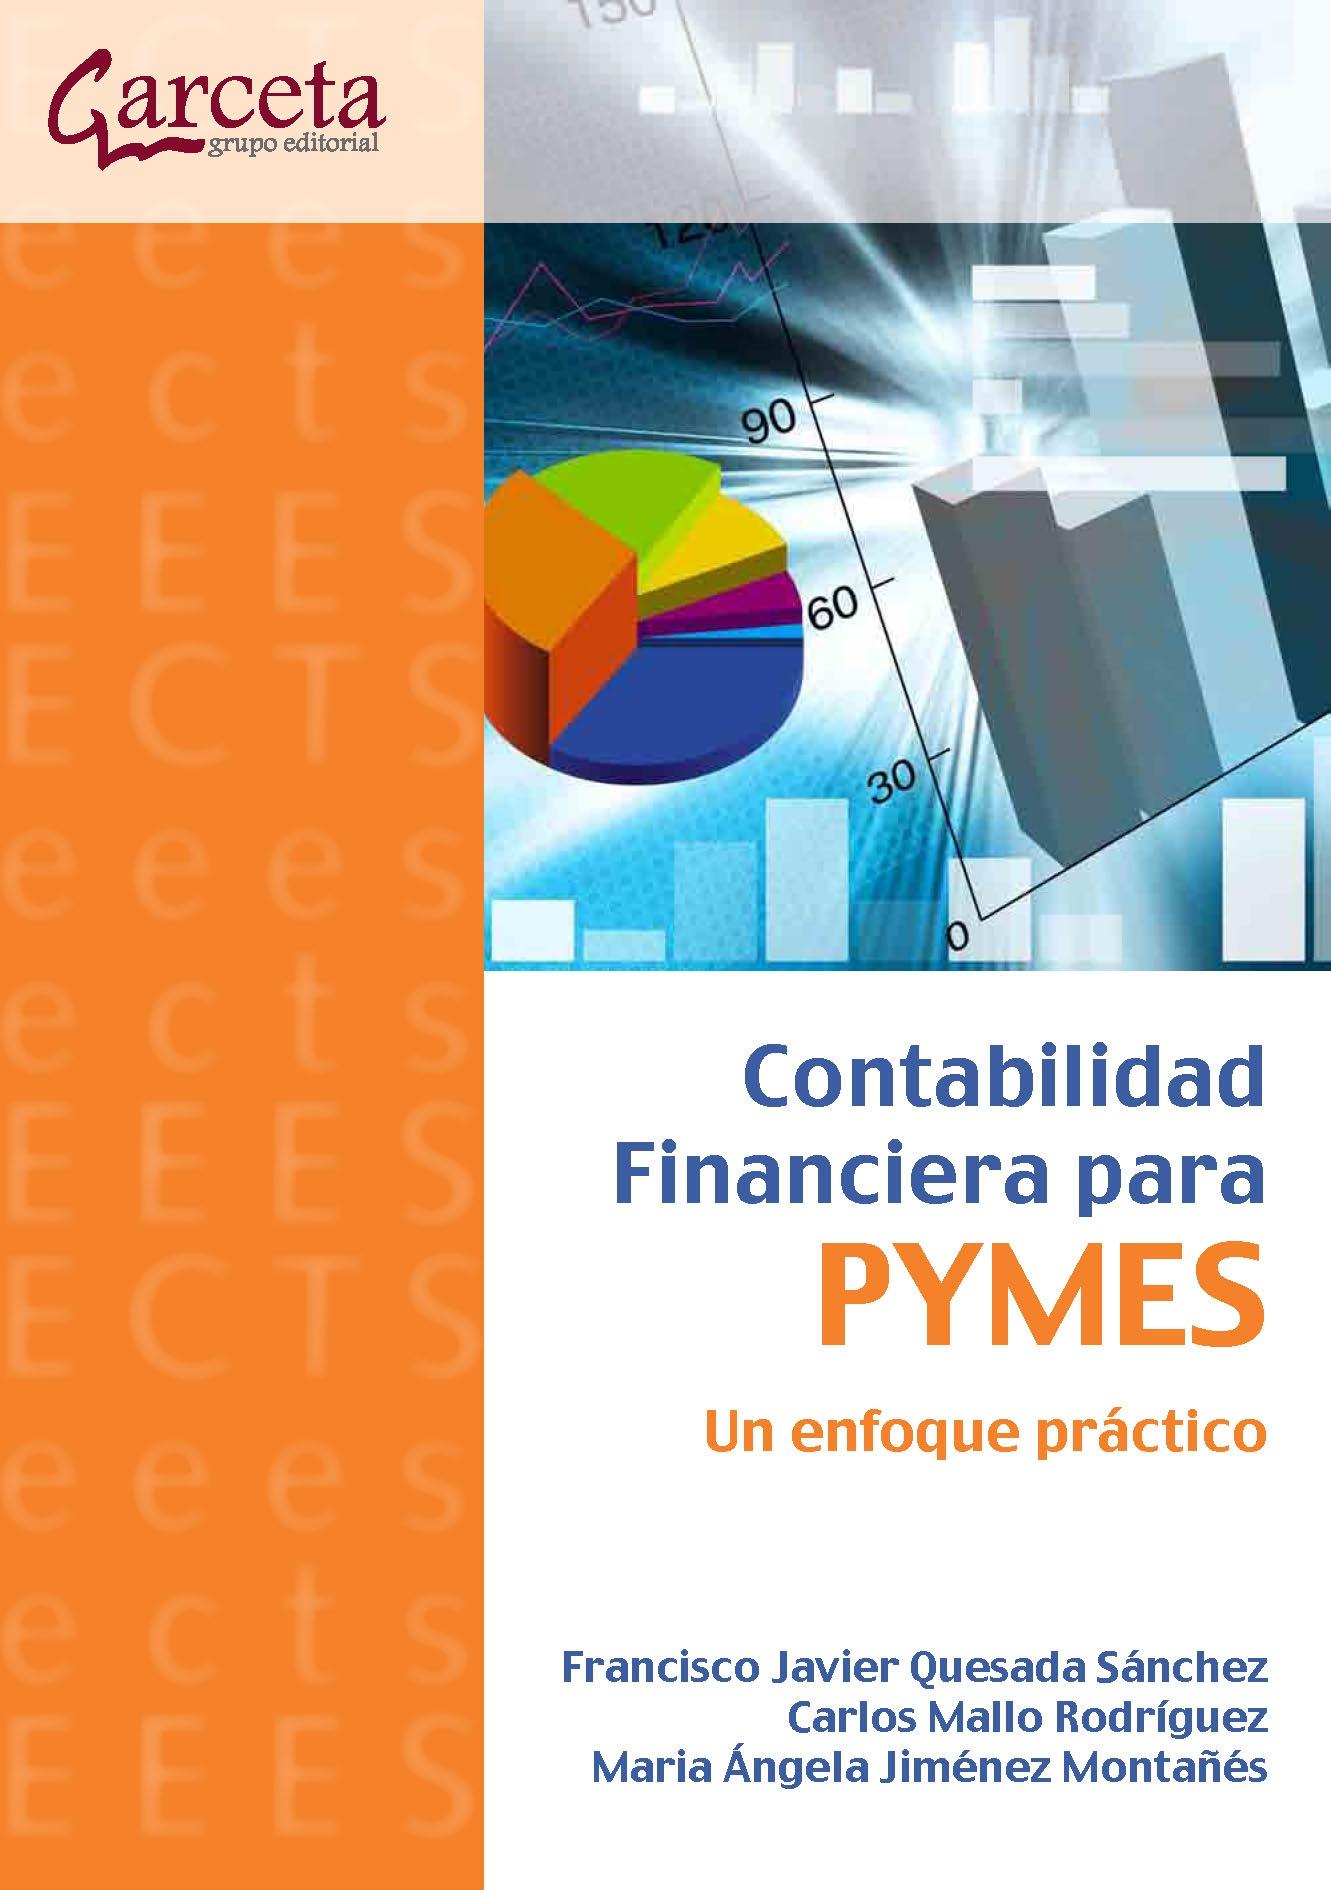 Contabilidad Financiera para Pymes "Un Enfoque Practico"